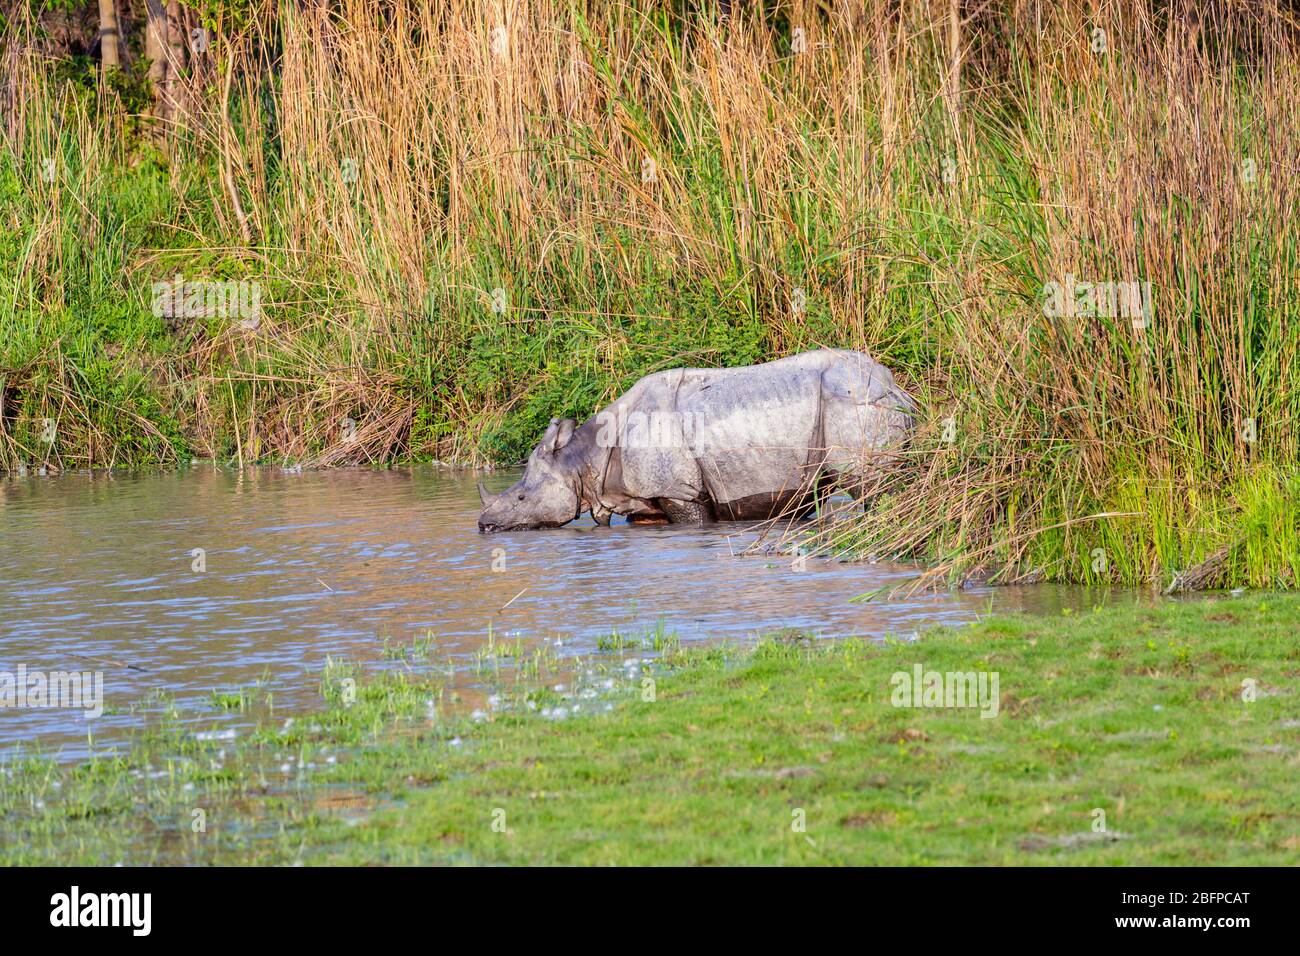 Un rinoceronte indiano (Rhinoceros unicornis) emerge da erba lunga e bevande su una riva del fiume nel Parco Nazionale di Kaziranga, Assam, India nordorientale Foto Stock